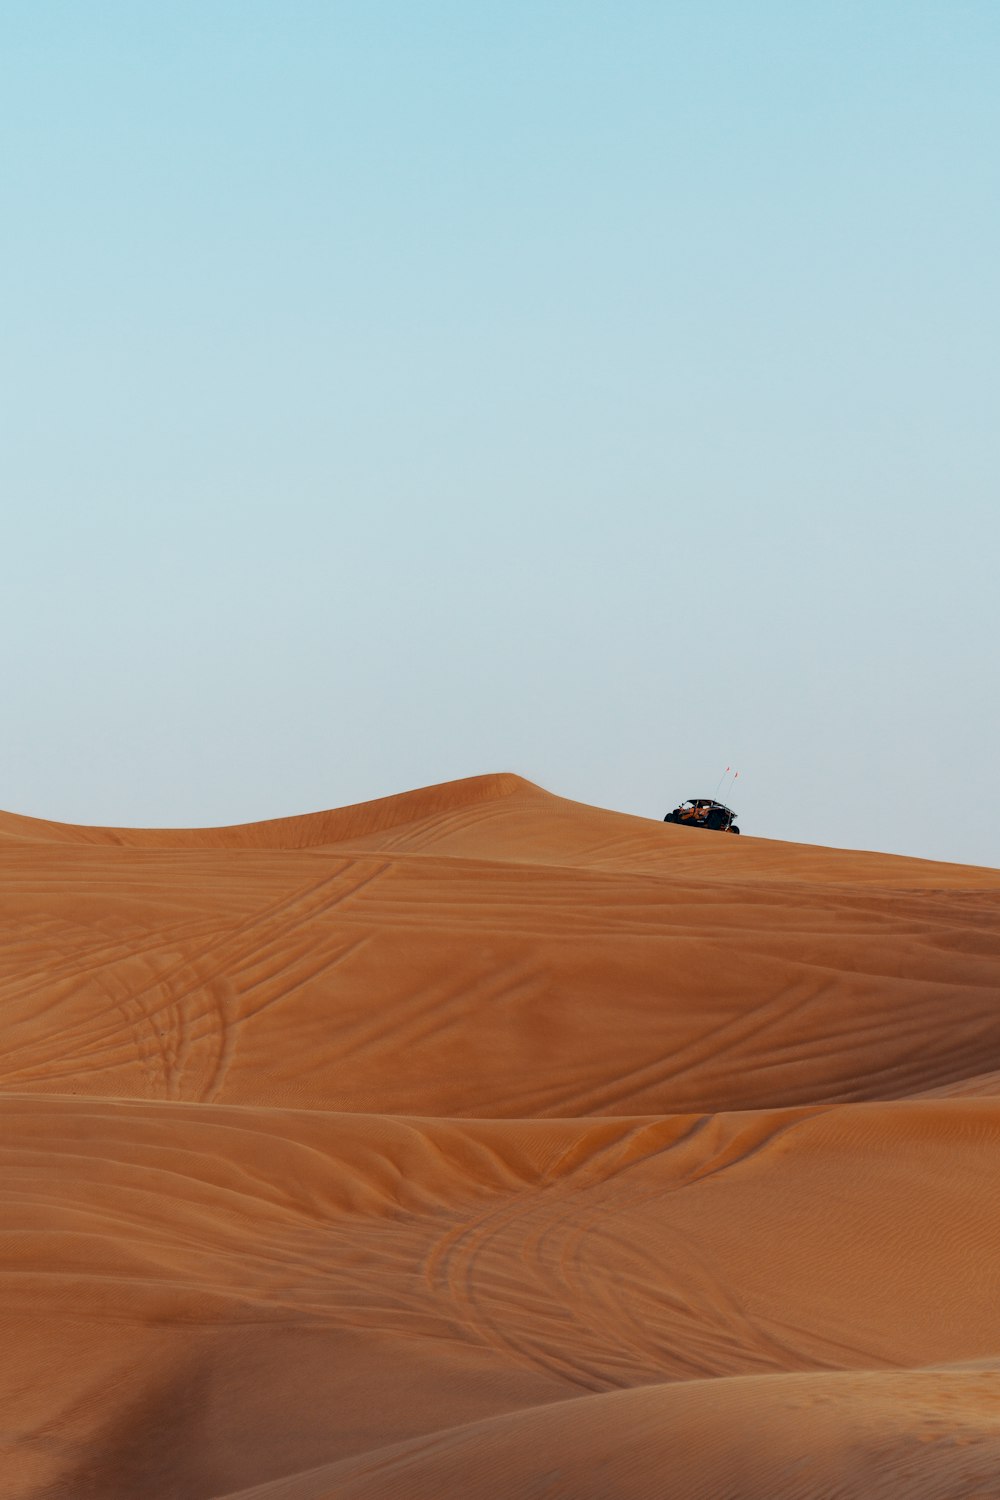 Fahrzeug in der Wüste unter ruhigem blauem Himmel